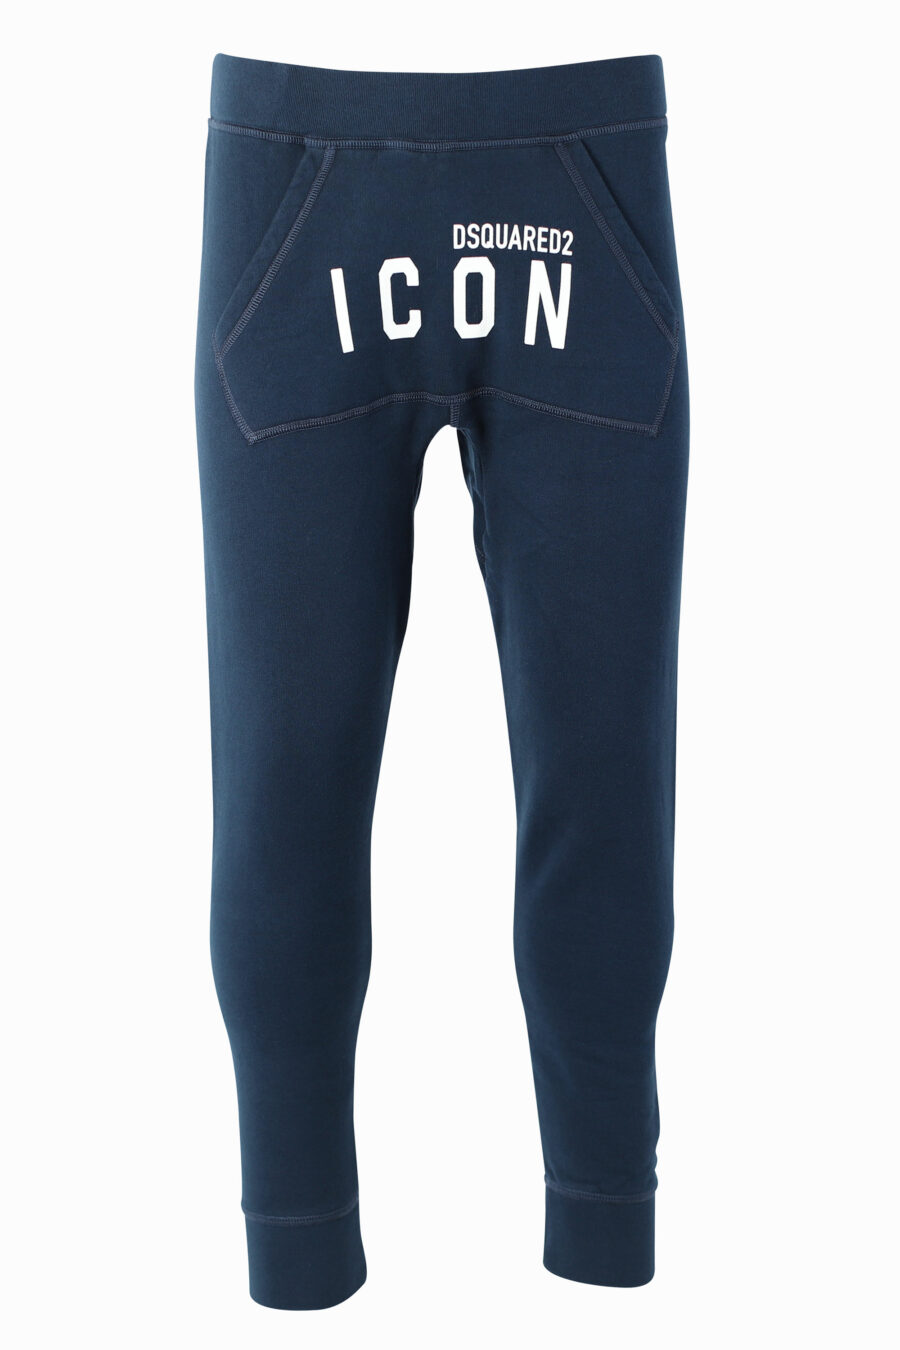 Pantalón de chándal azul con doble logo "icon" frontal - IMG 1026